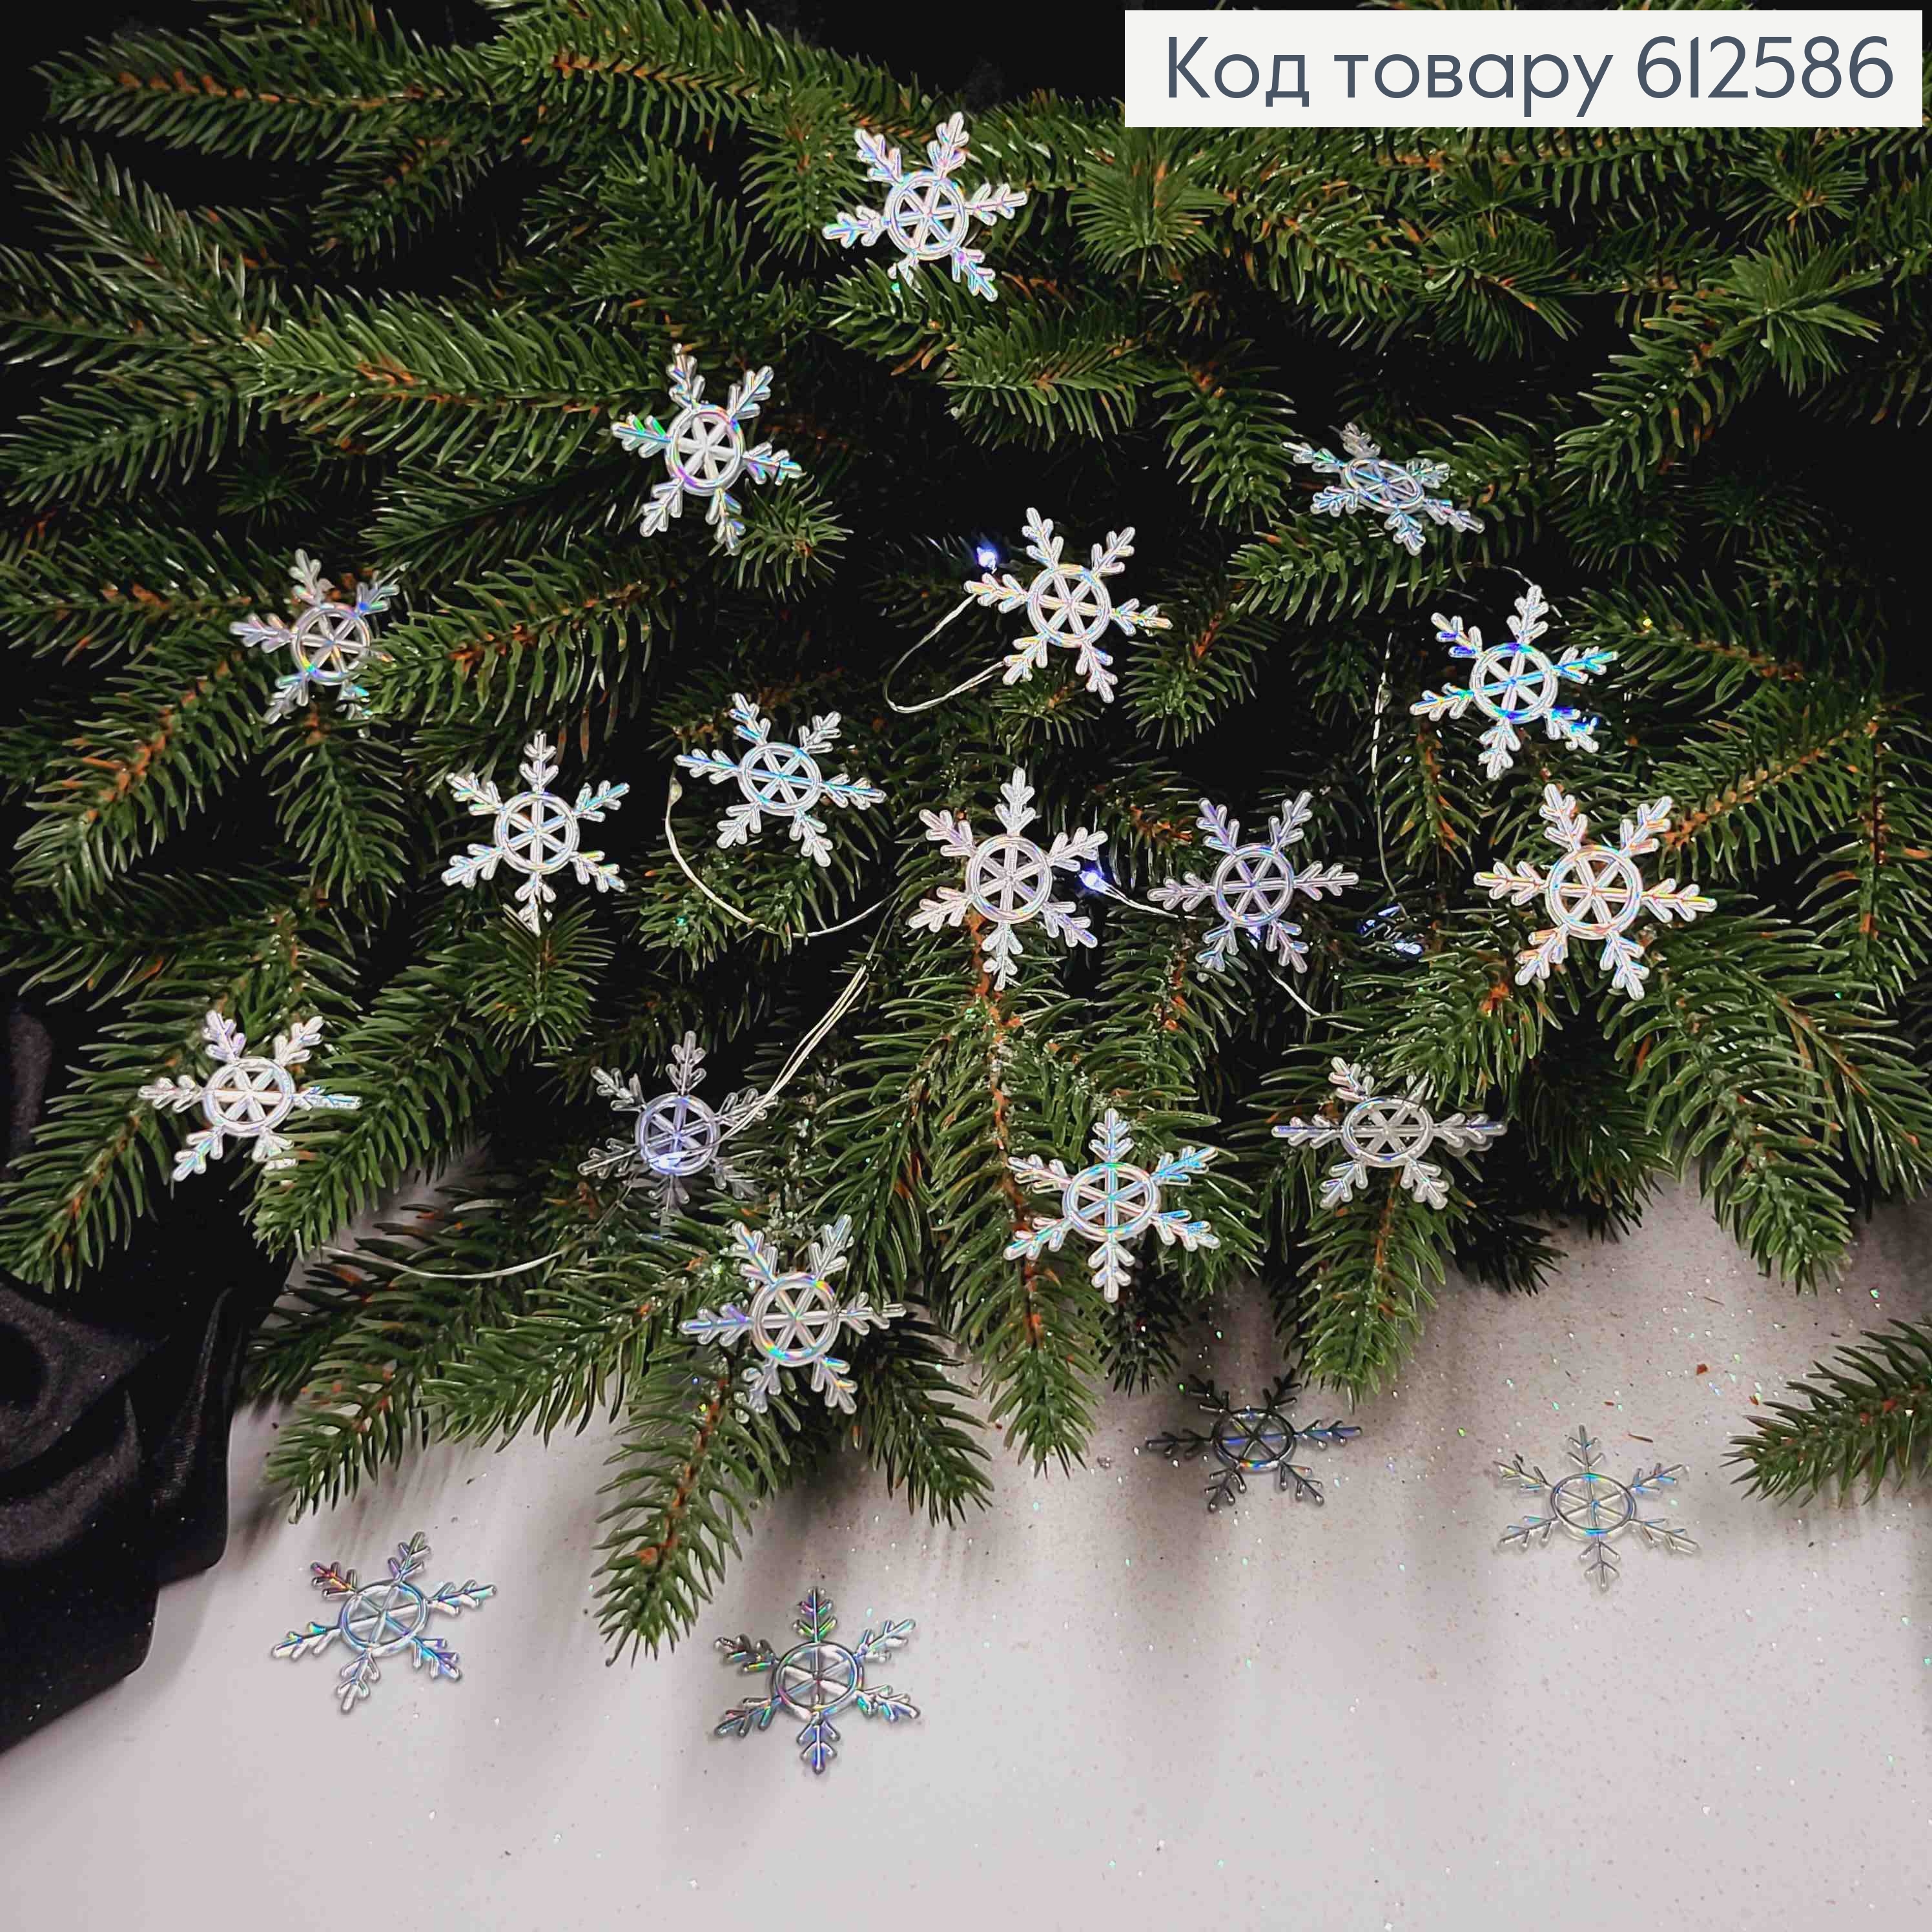 Новогодняя фигура, набор снежинок, пластик, Голографические, 20шт/уп, 3,5см, Украина. 612586 фото 2